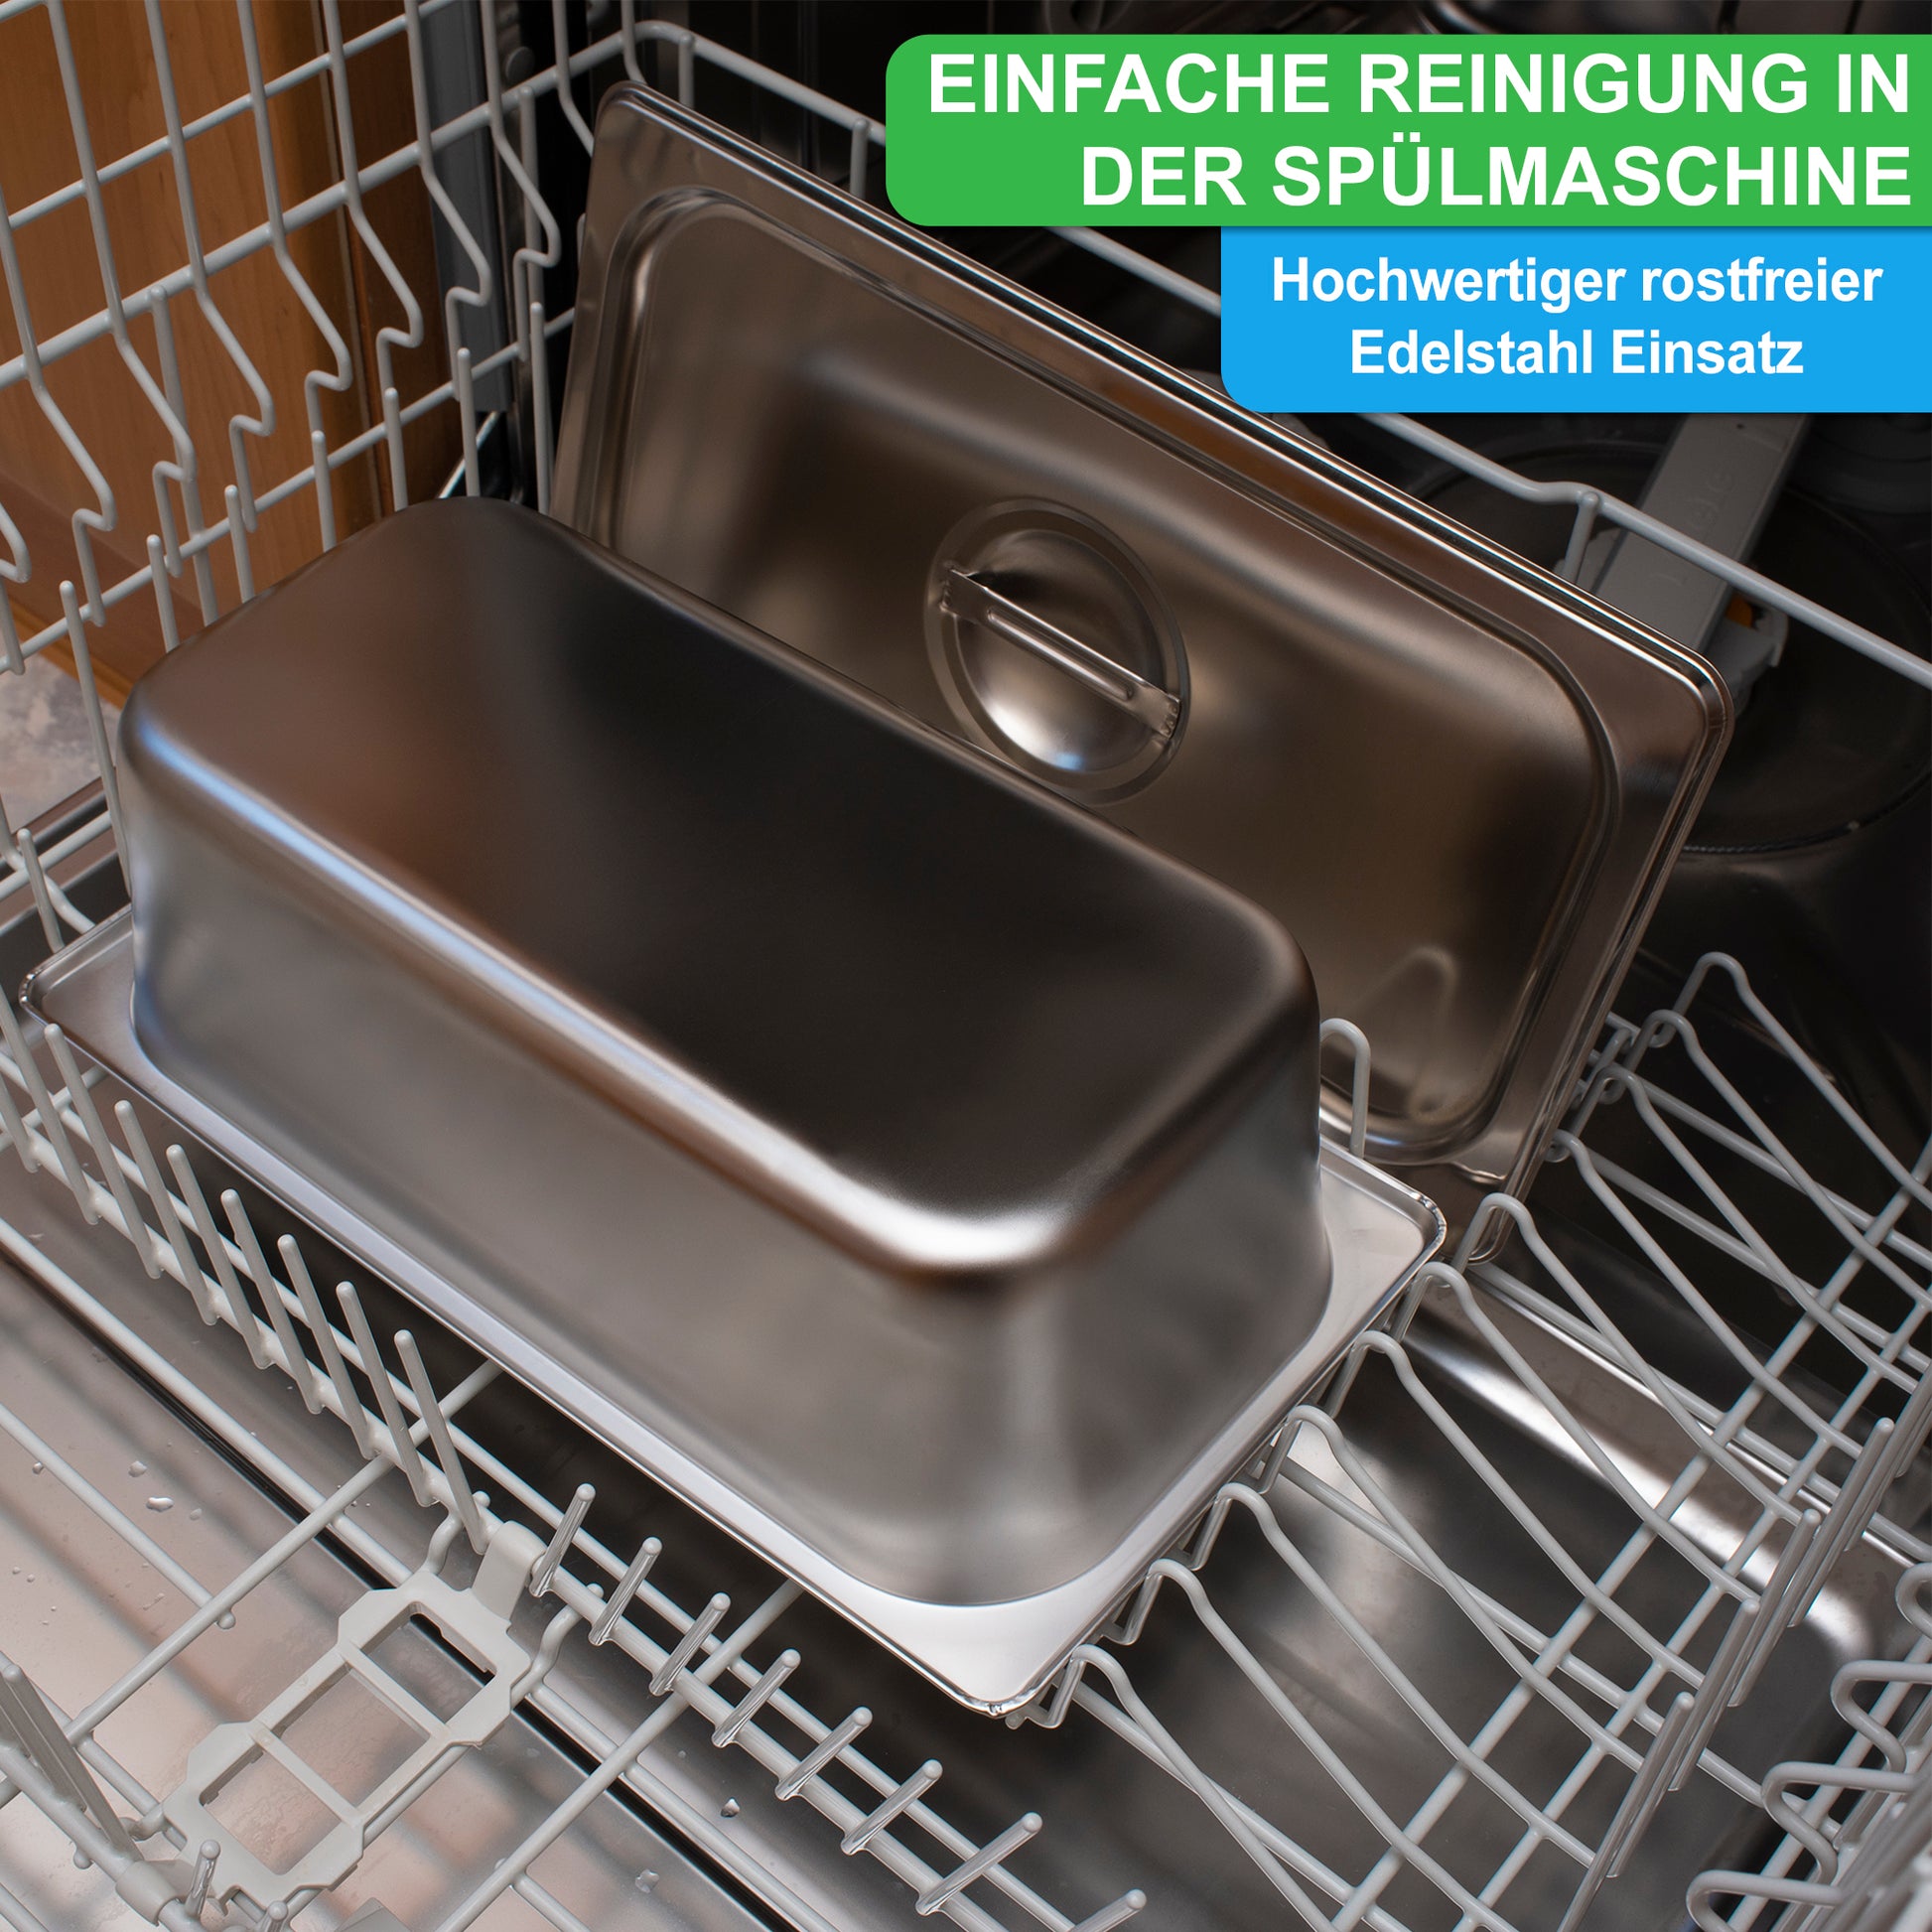 YourCasa® Komposteimer aus Echtholz und Edelstahl ist spülmaschinenfest und lässt sich somit leicht reinigen.